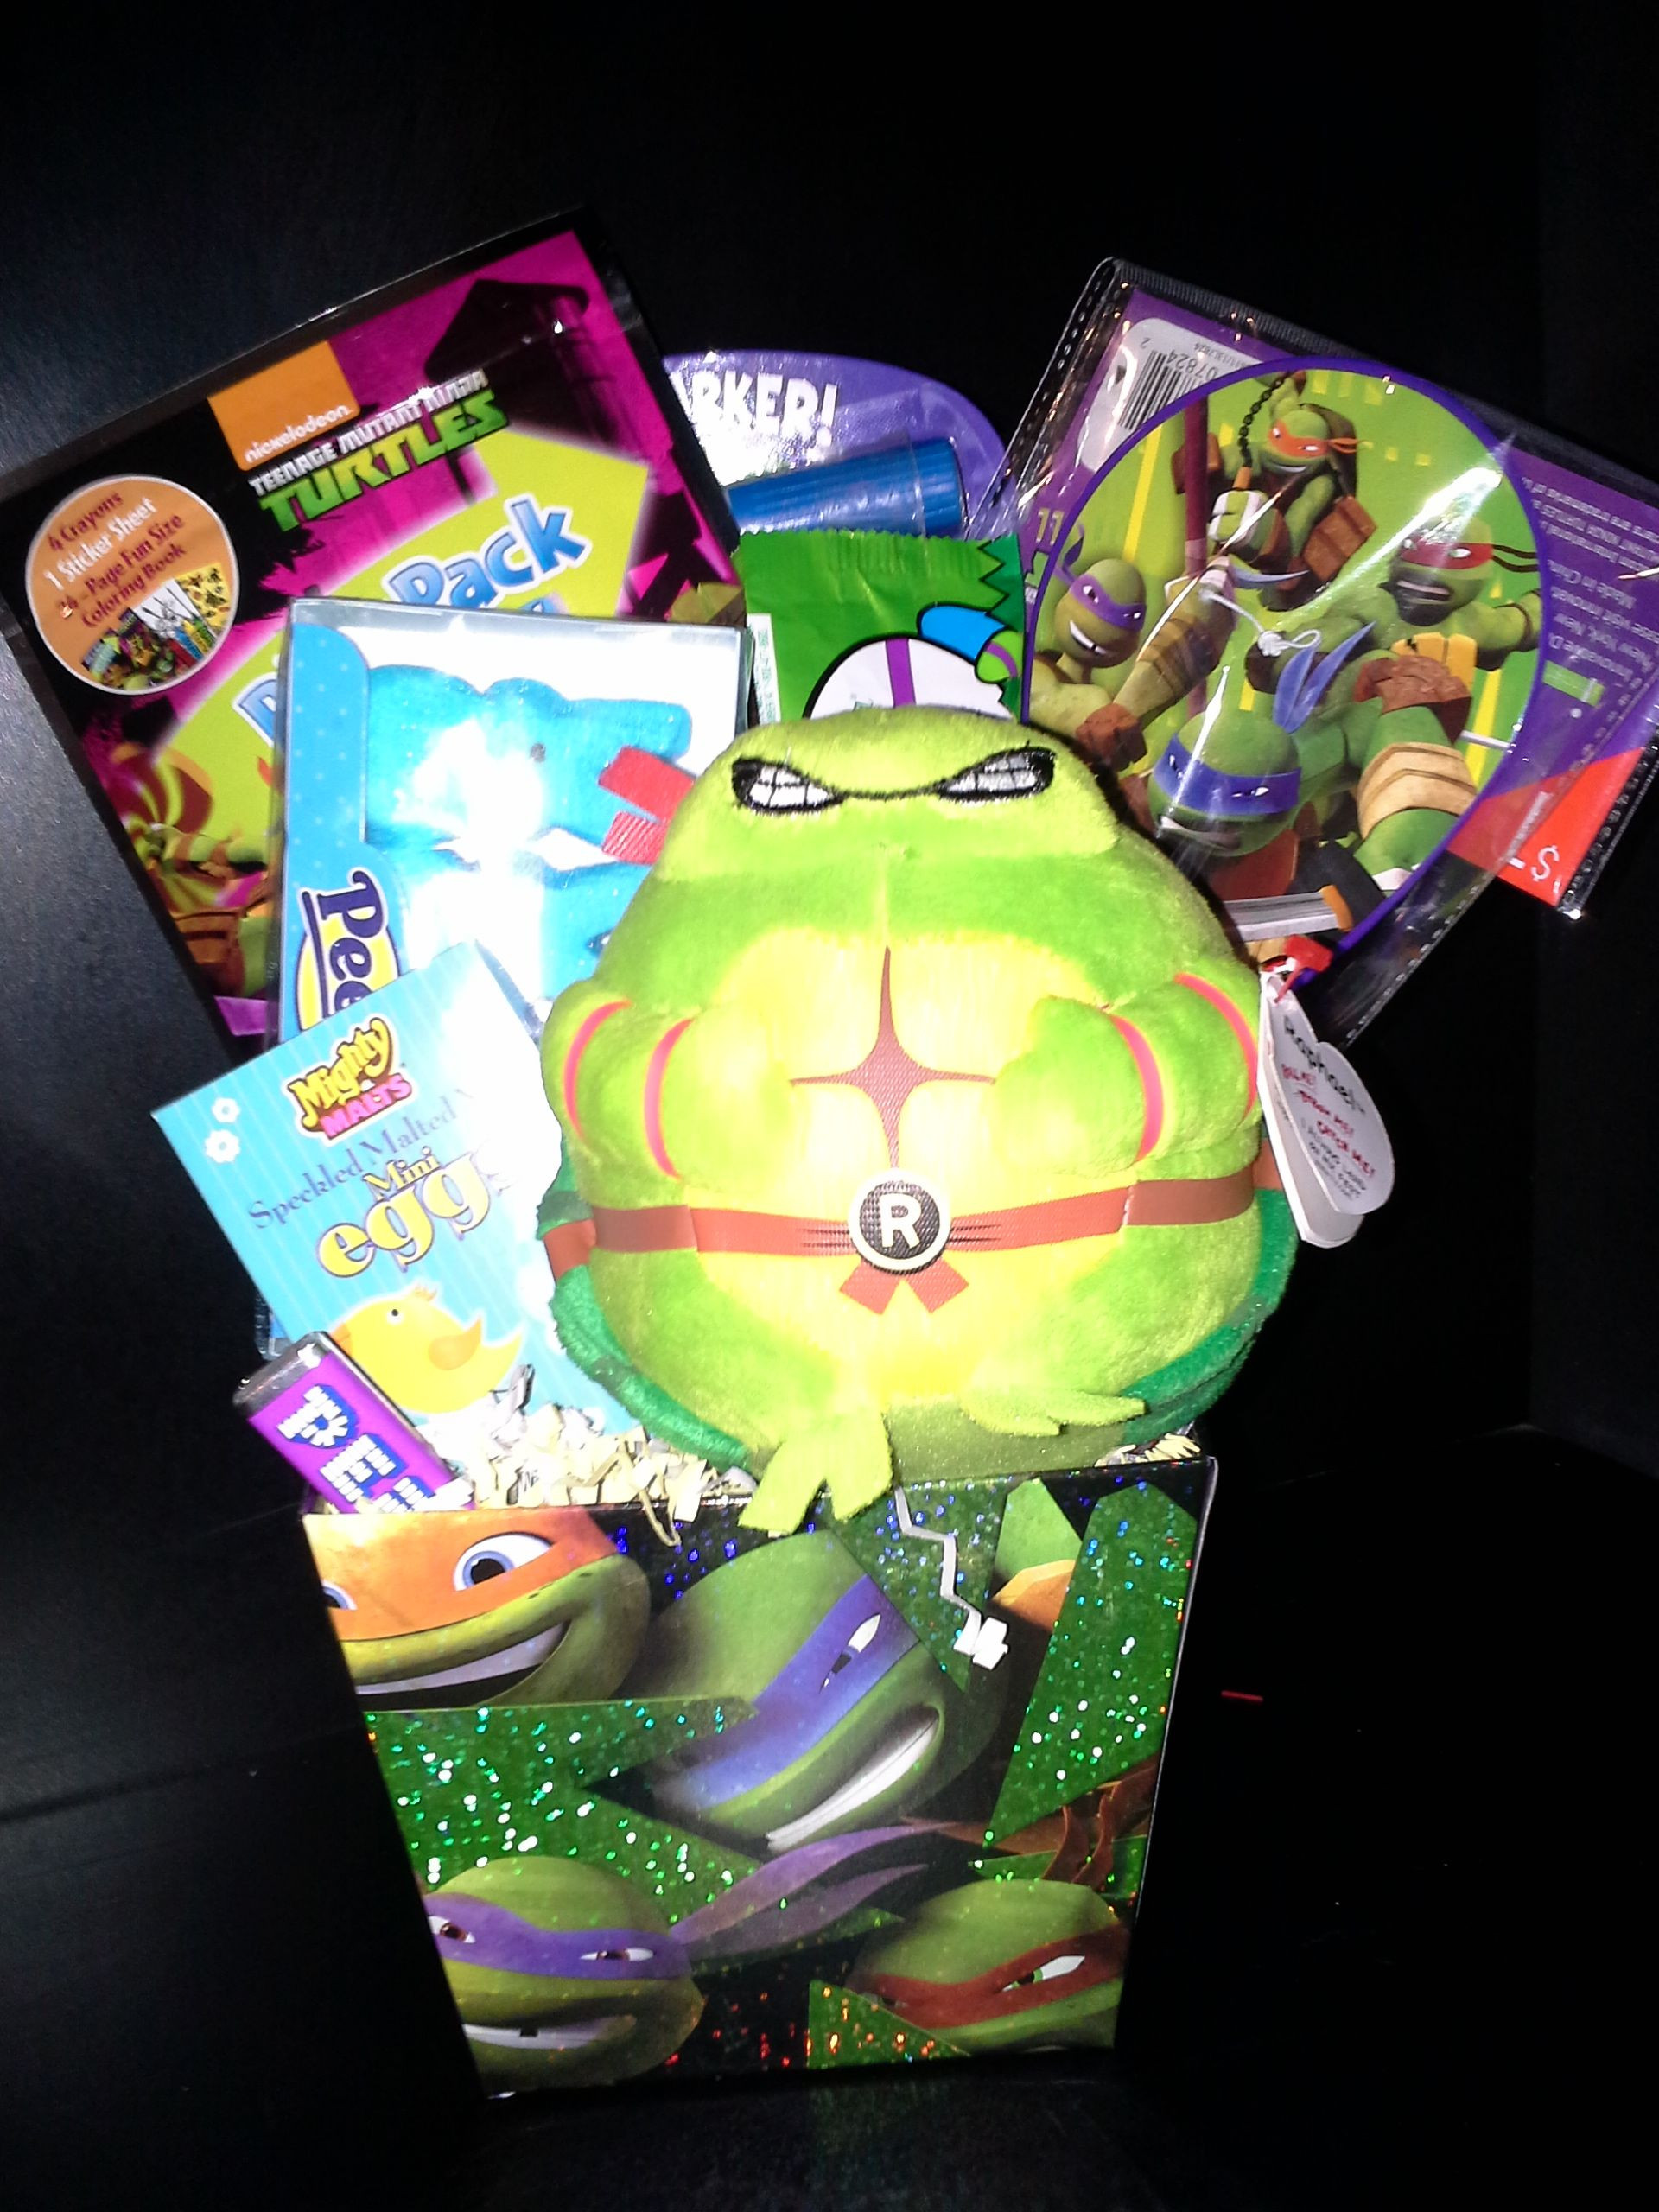 Ninja Turtle Easter Basket Ideas
 Ninja Turtle Easter Basket $20